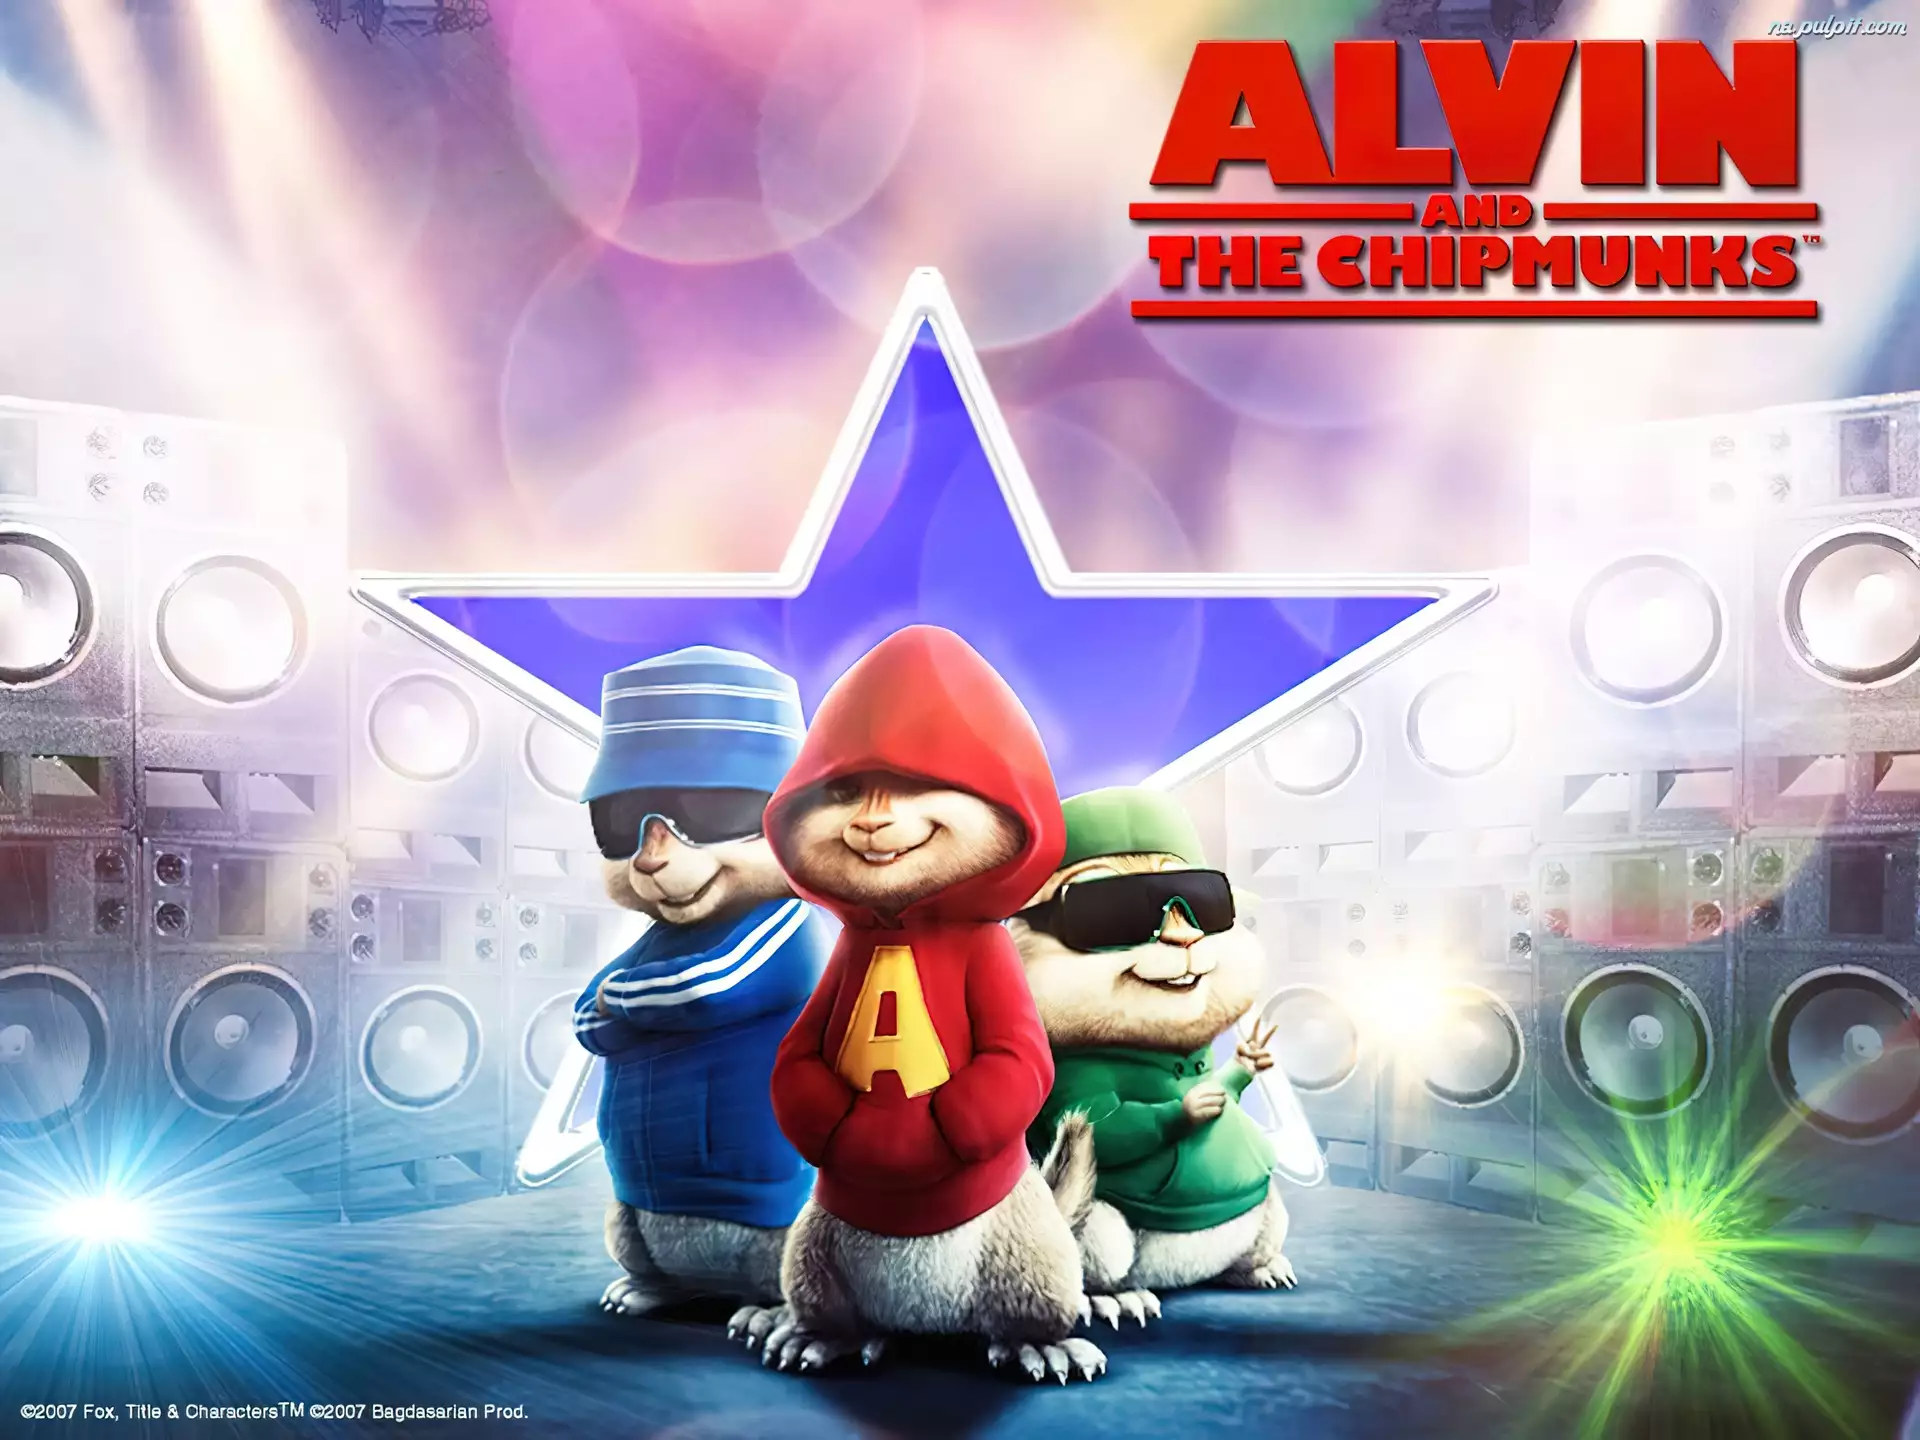 Alvin and the Chipmunks, Alvin i wiewiórki